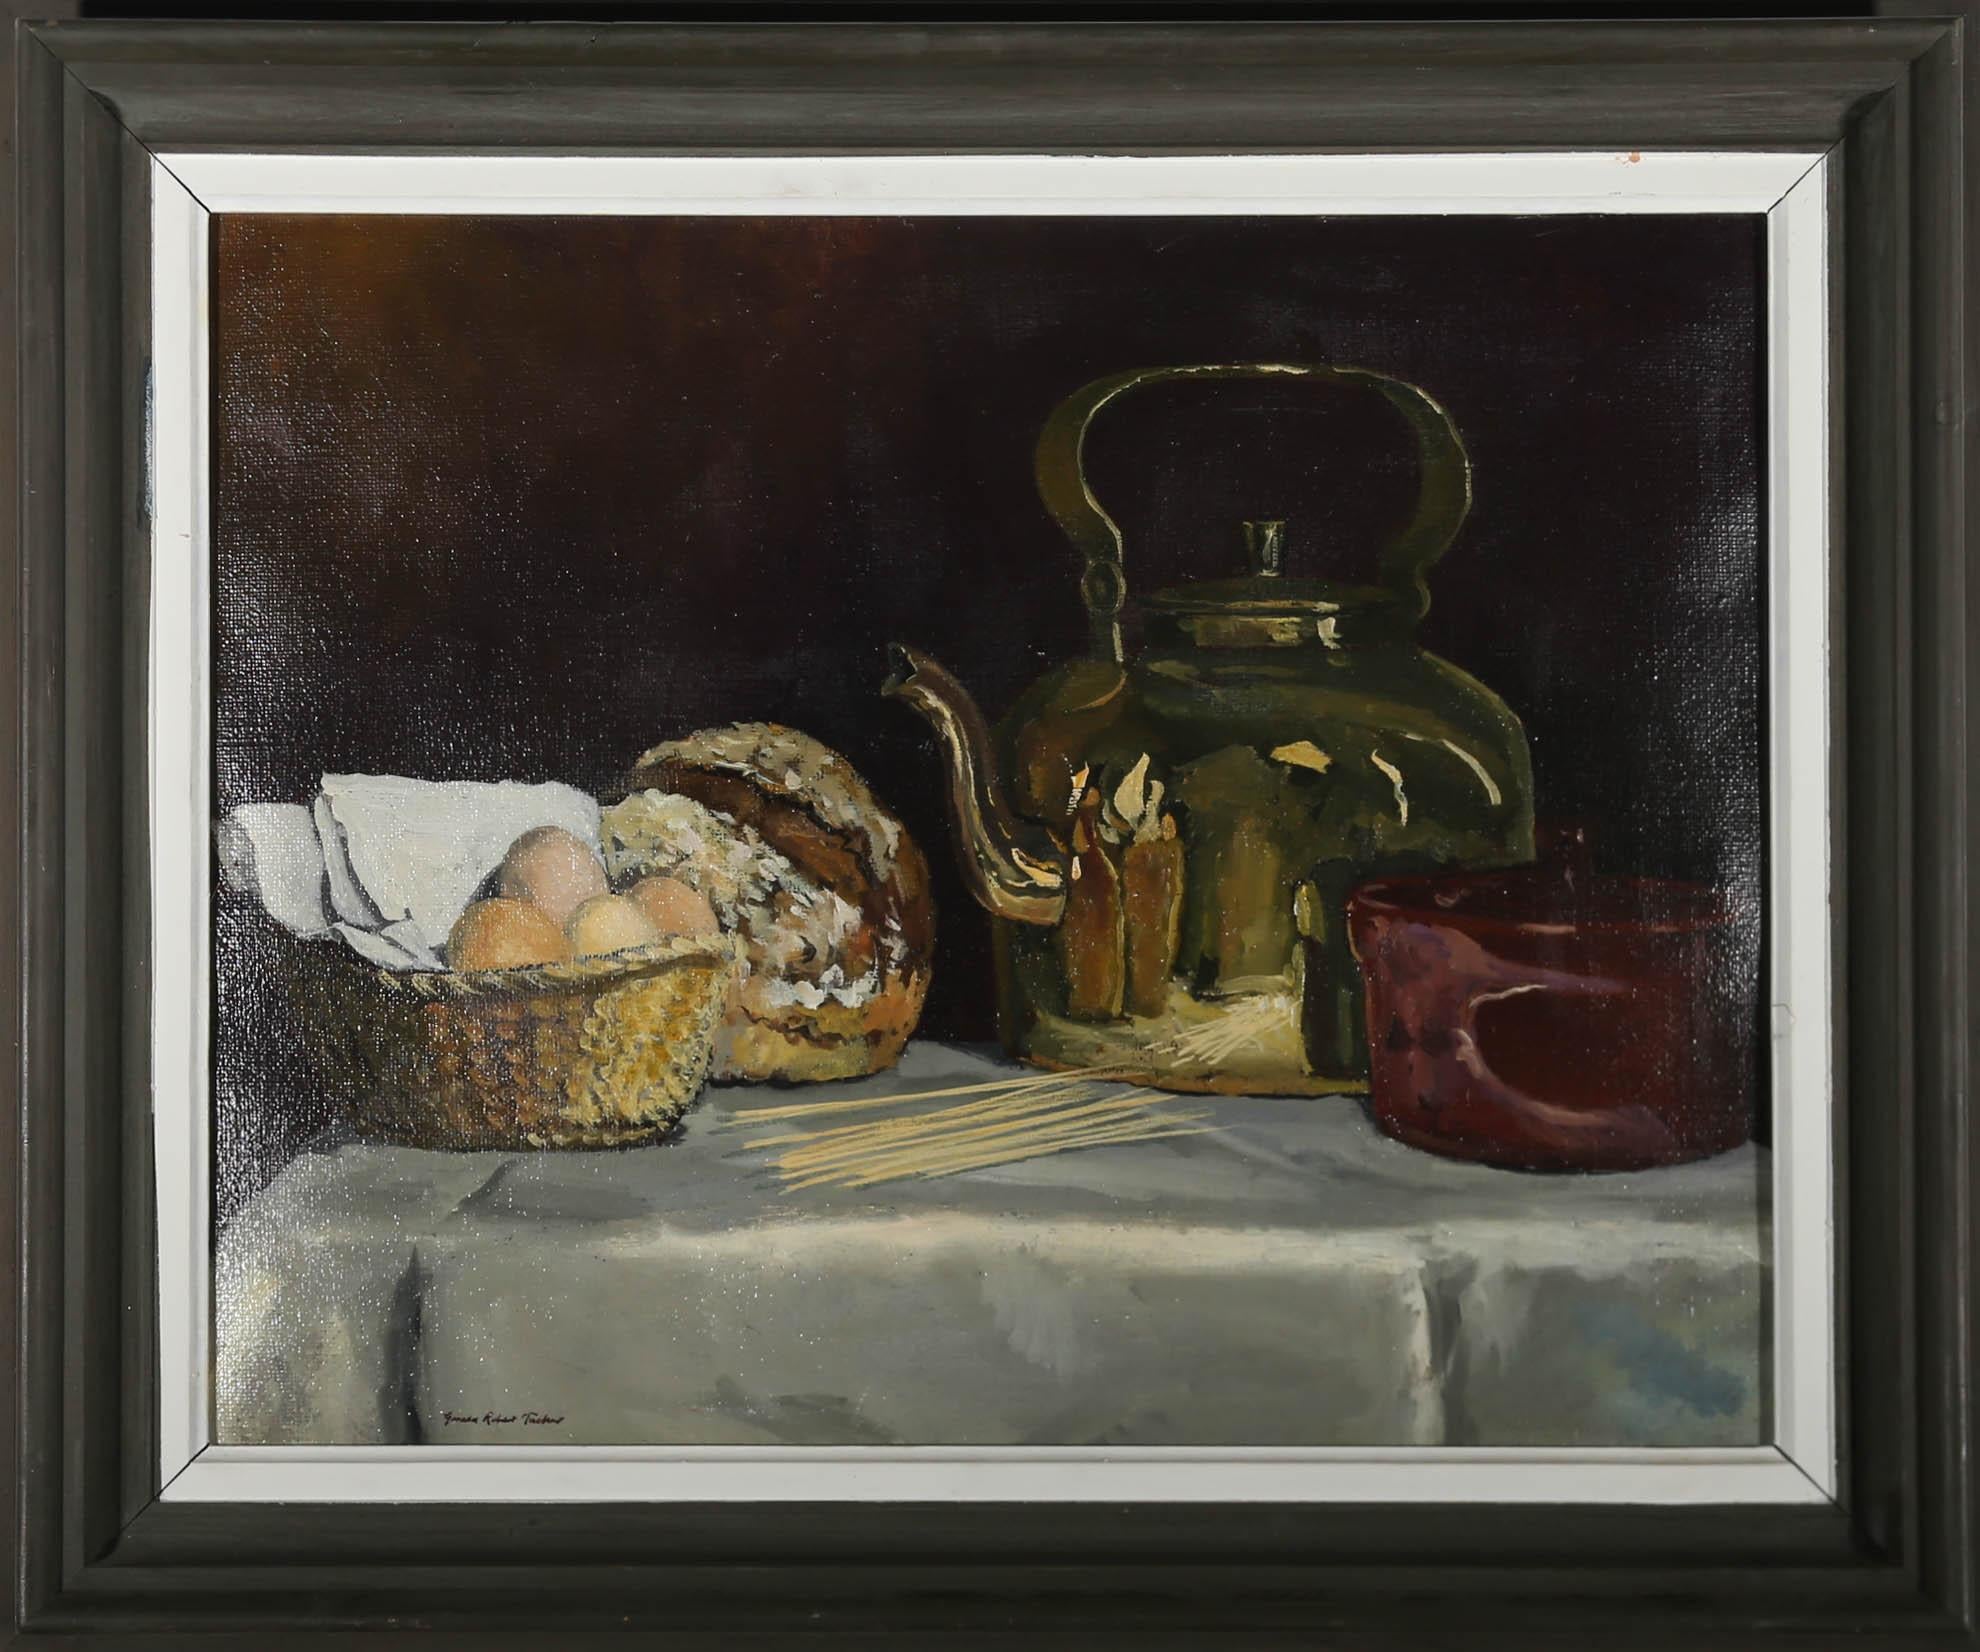 Une charmante pièce du milieu du siècle dernier représentant une bouilloire en cuivre et du pain frais placés dans un intérieur sombre. L'artiste met fortement l'accent sur la lumière dans la scène, les reflets dans les surfaces métalliques se